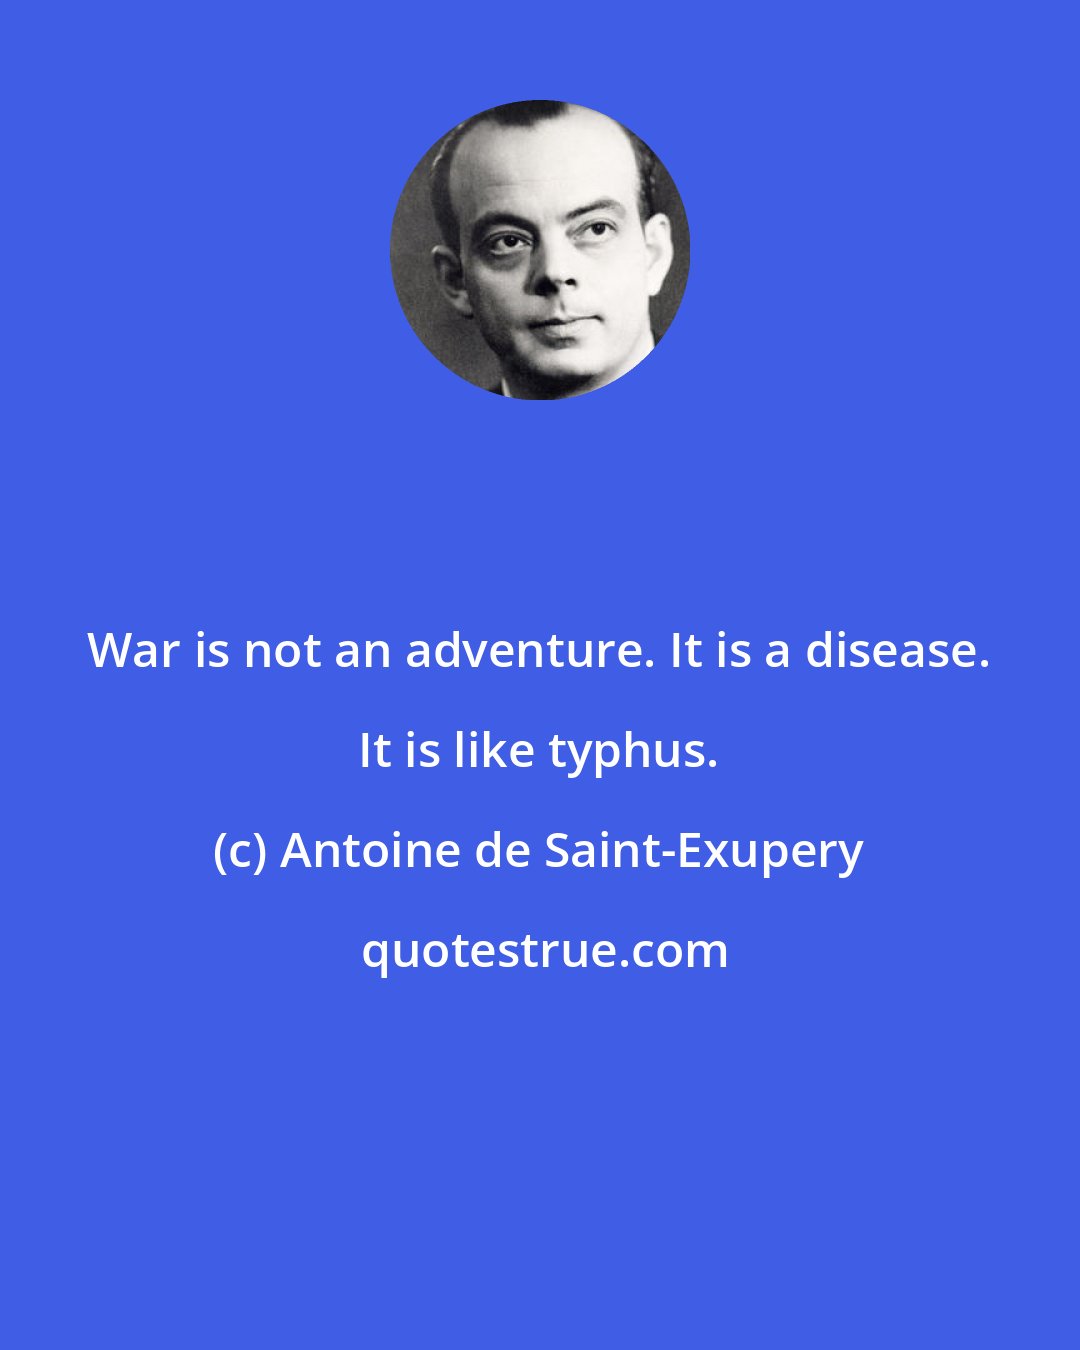 Antoine de Saint-Exupery: War is not an adventure. It is a disease. It is like typhus.